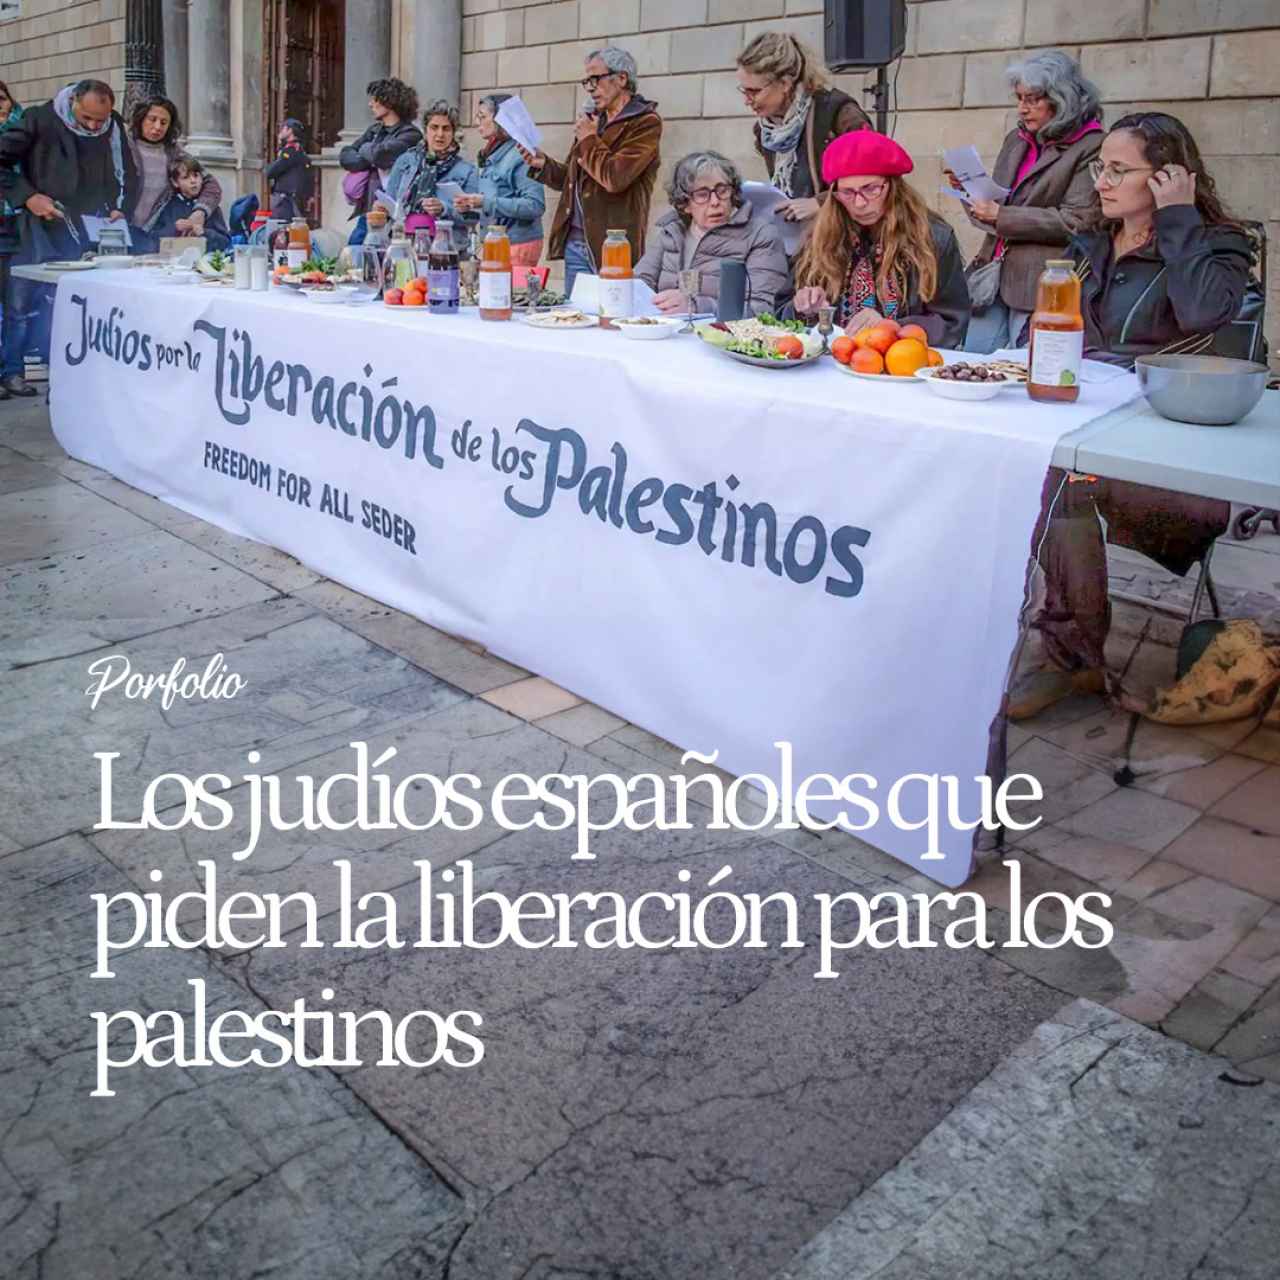 Los judíos españoles que quieren la liberación de los palestinos: "Se usa el Holocausto para justificar actos reprobables"